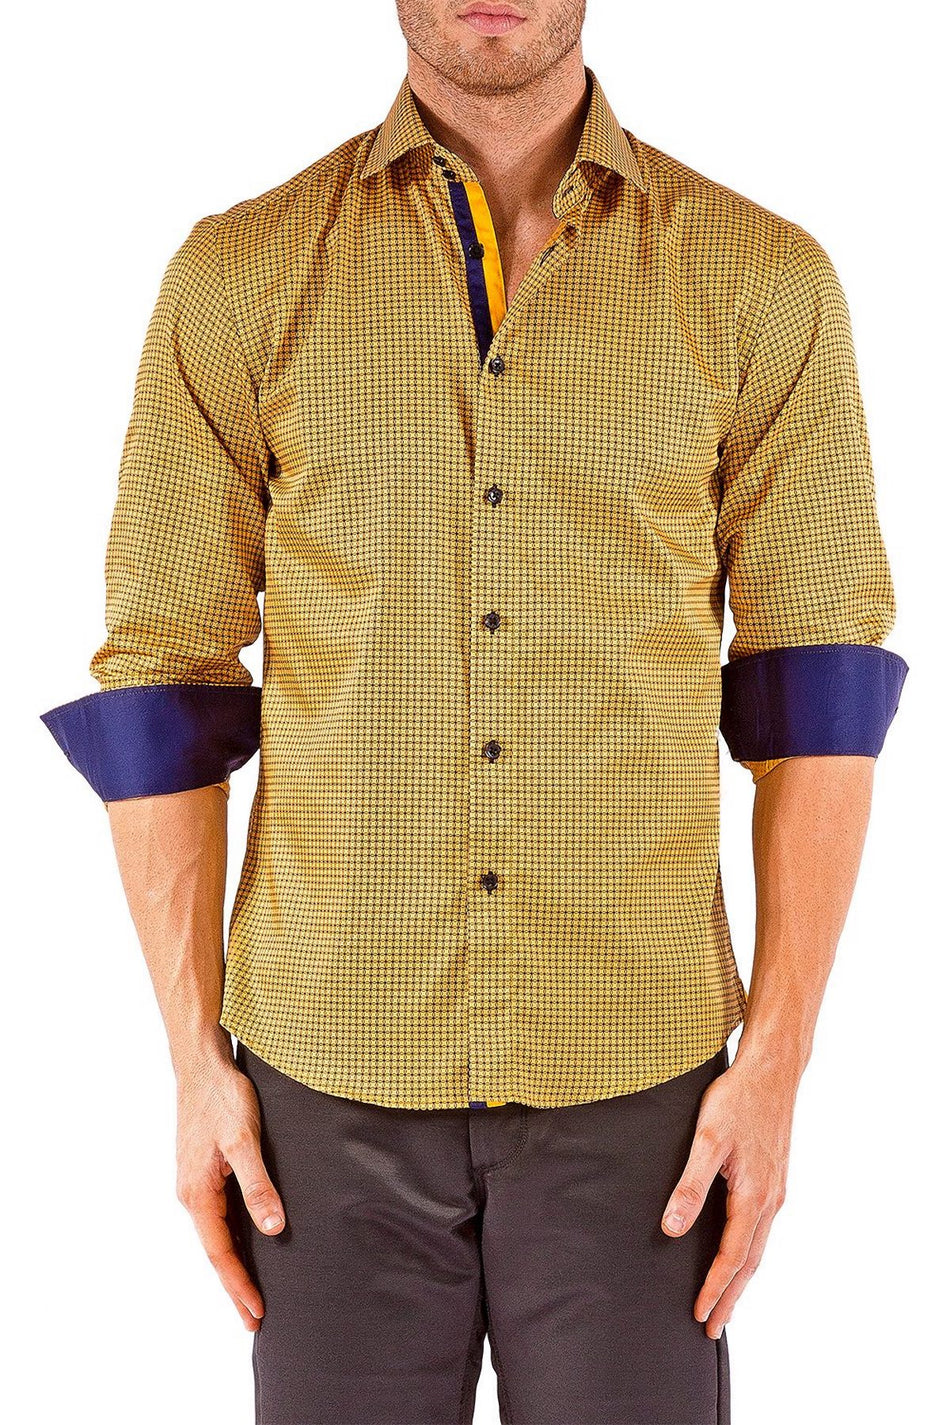 Men's Modern Fit Cotton Button Up Gold Squares